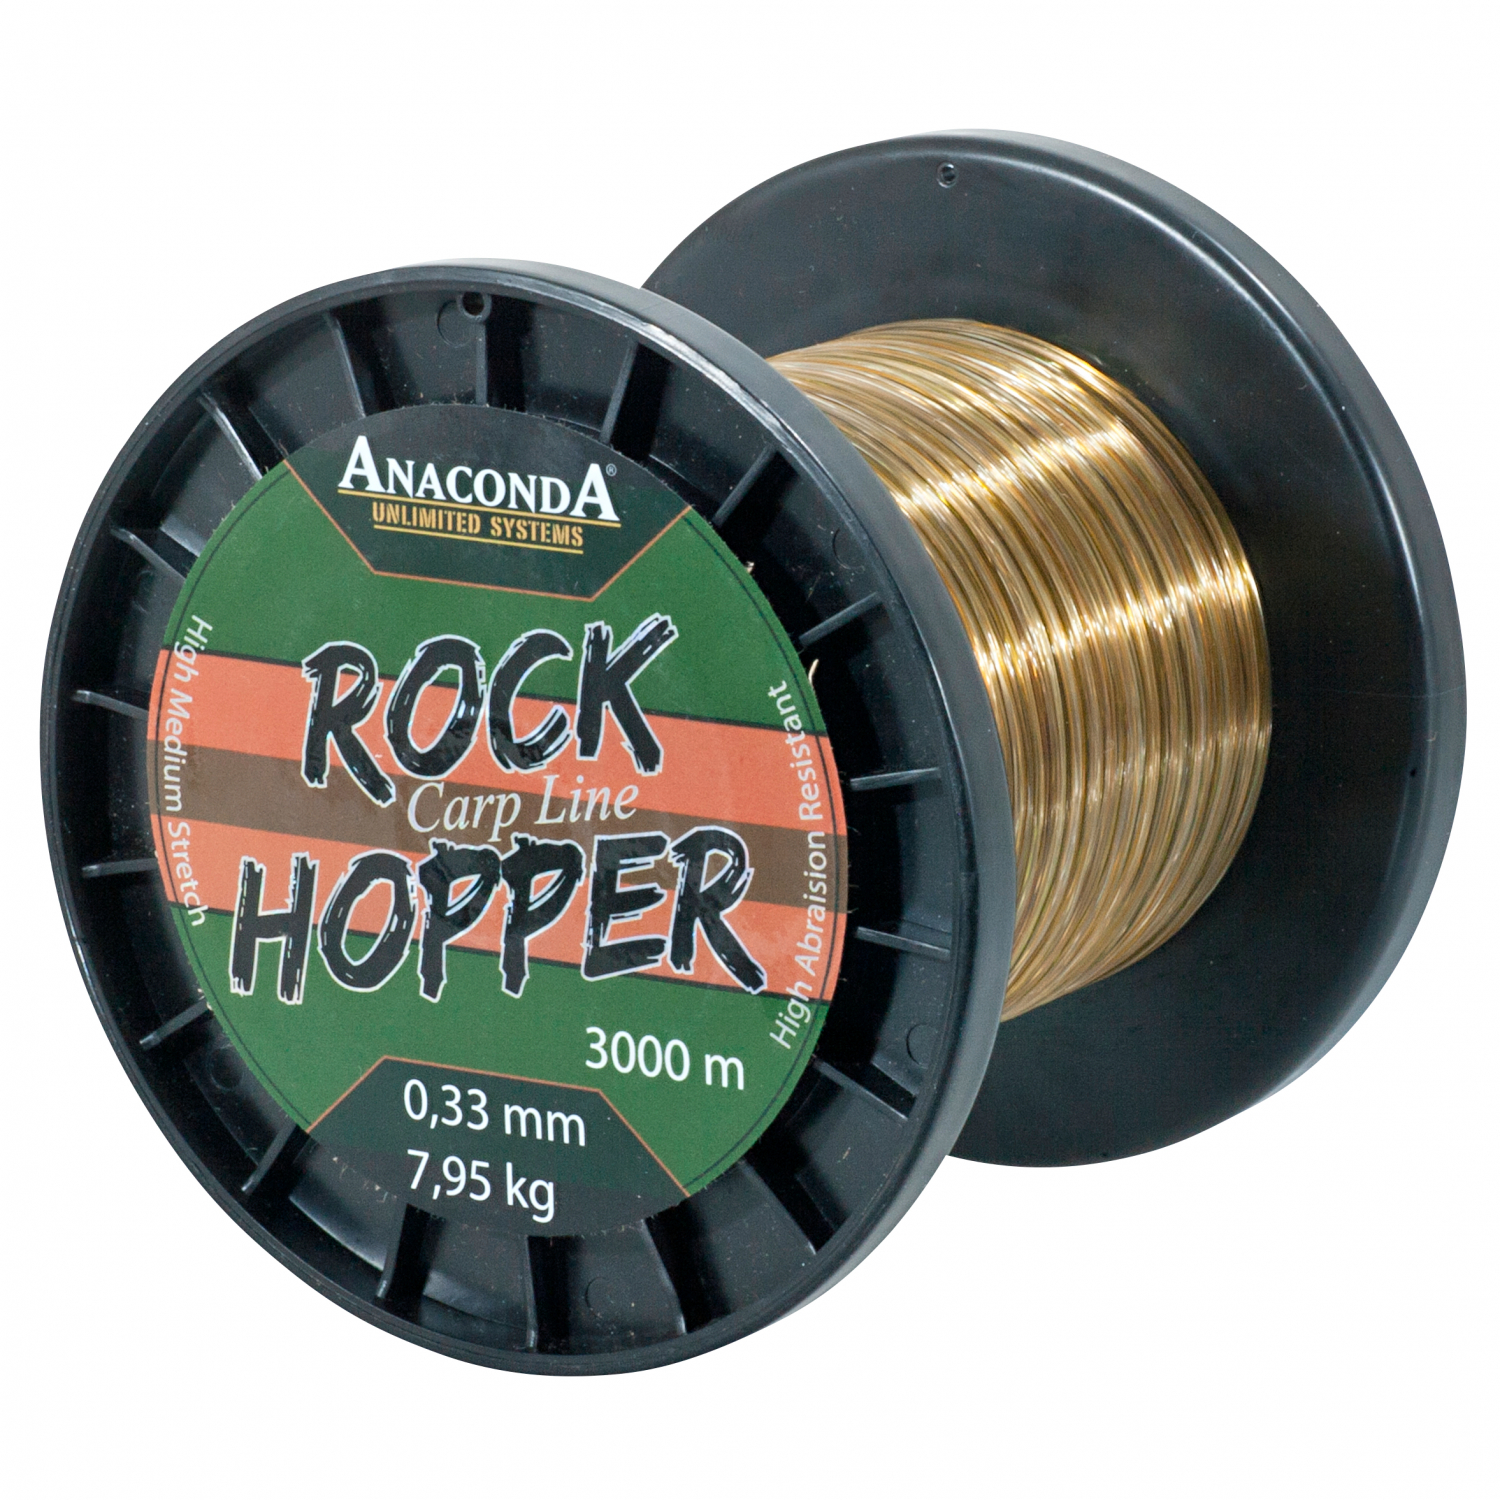 Anaconda Sänger Anaconda Rockhopper Fishing Line 